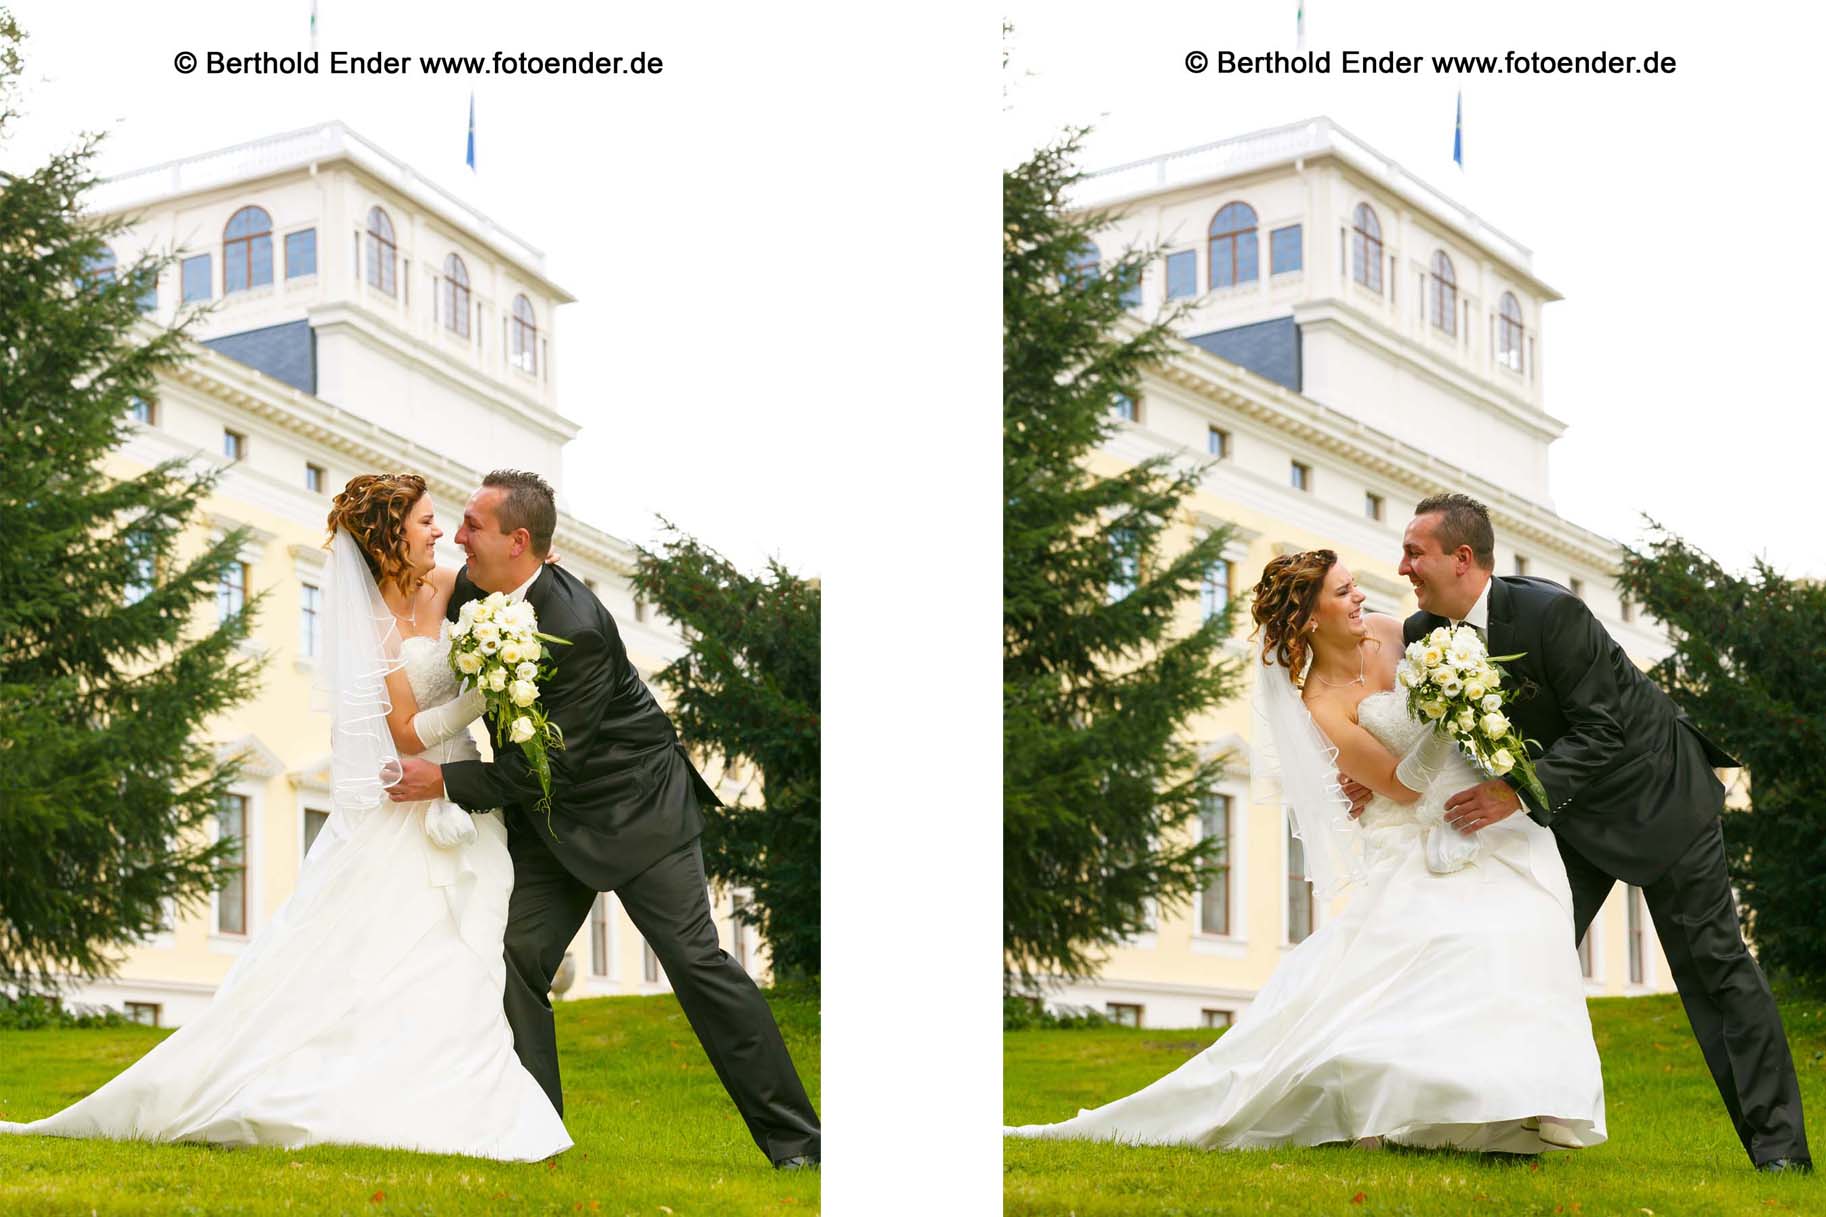 Brautpaar Shooting im Wörlitzer Park: Hochzeitsfotograf Berthold Ender